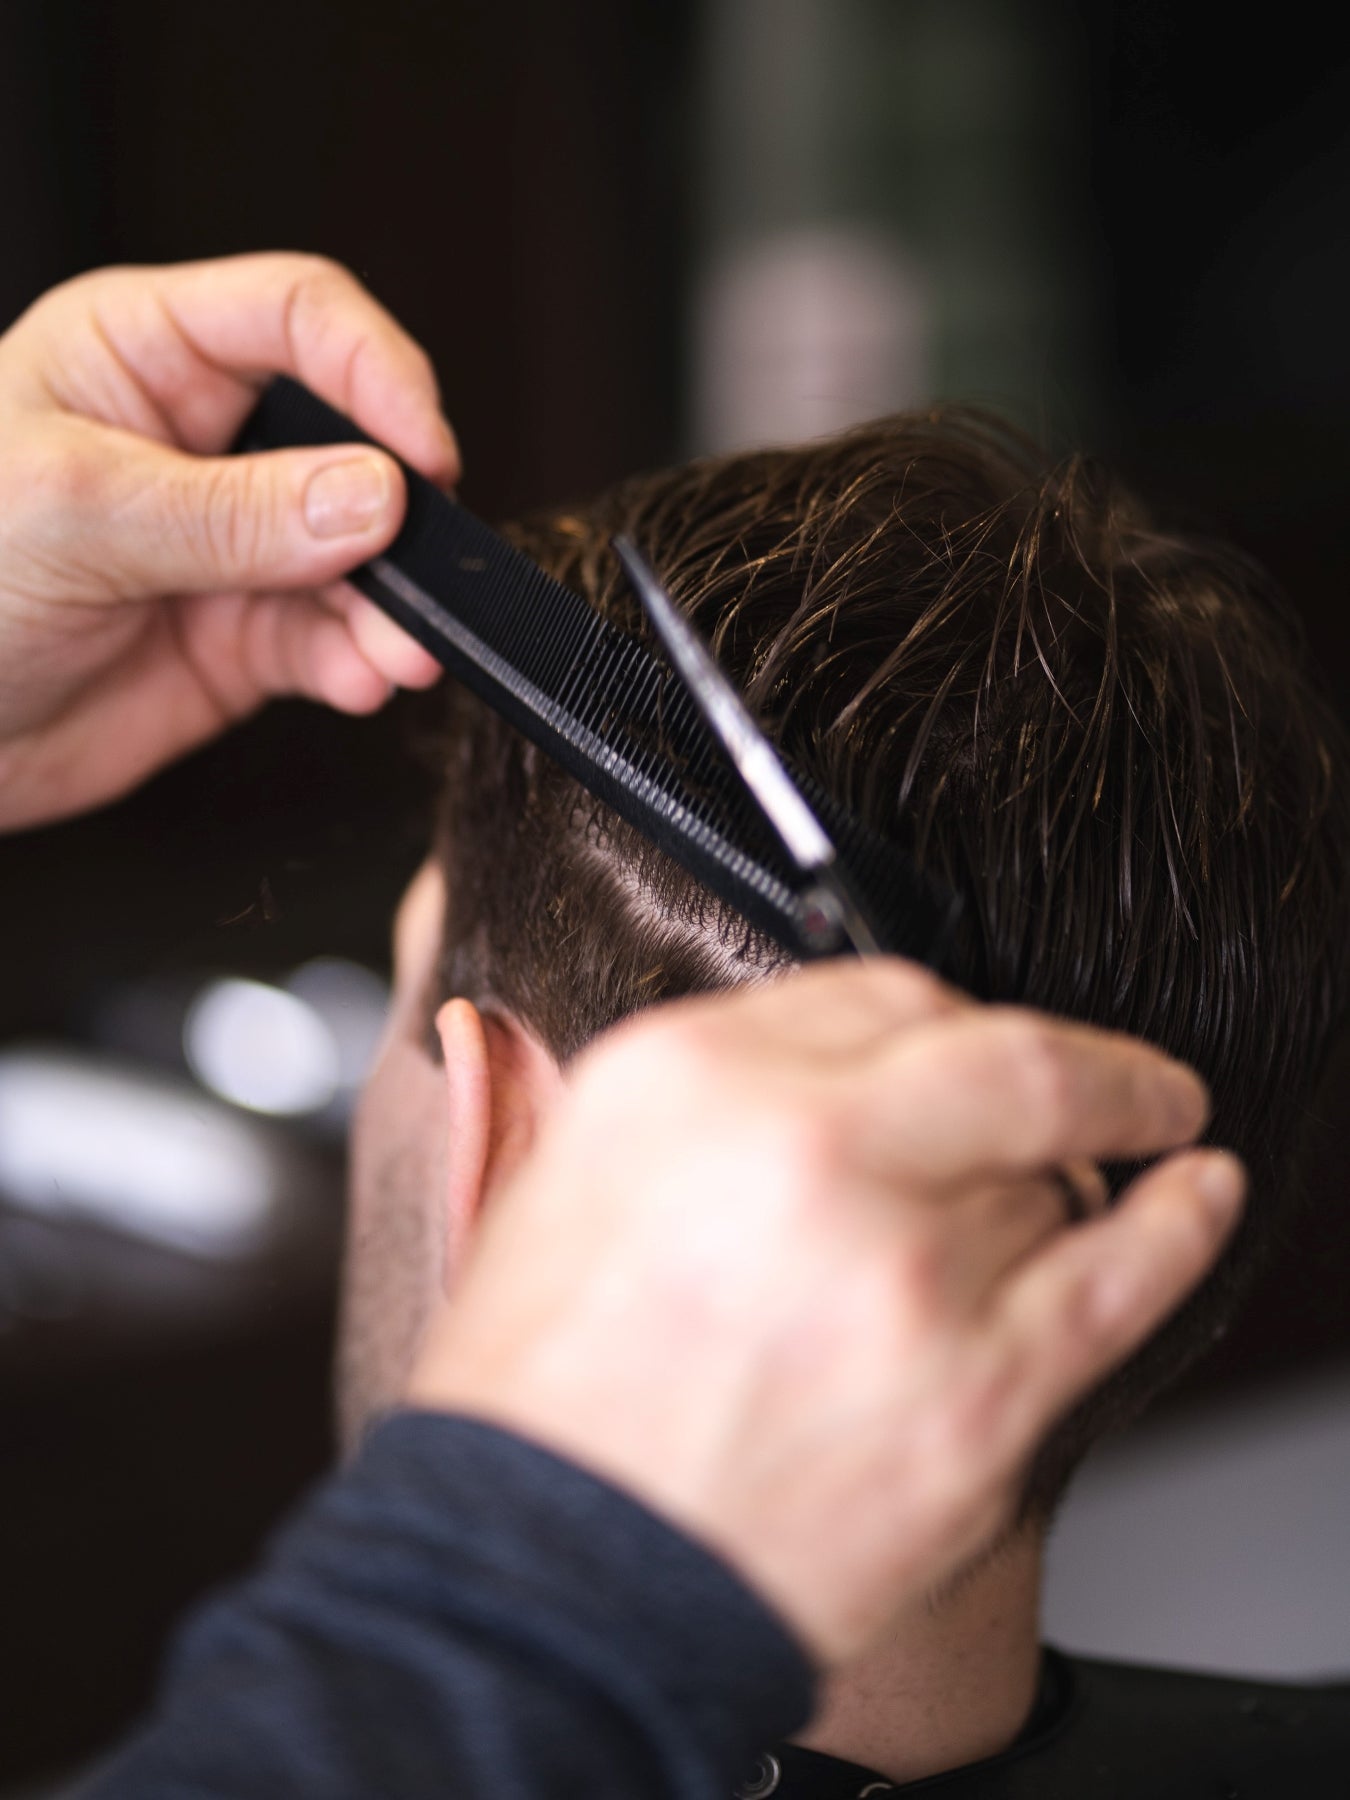 Barbering scissor over comb